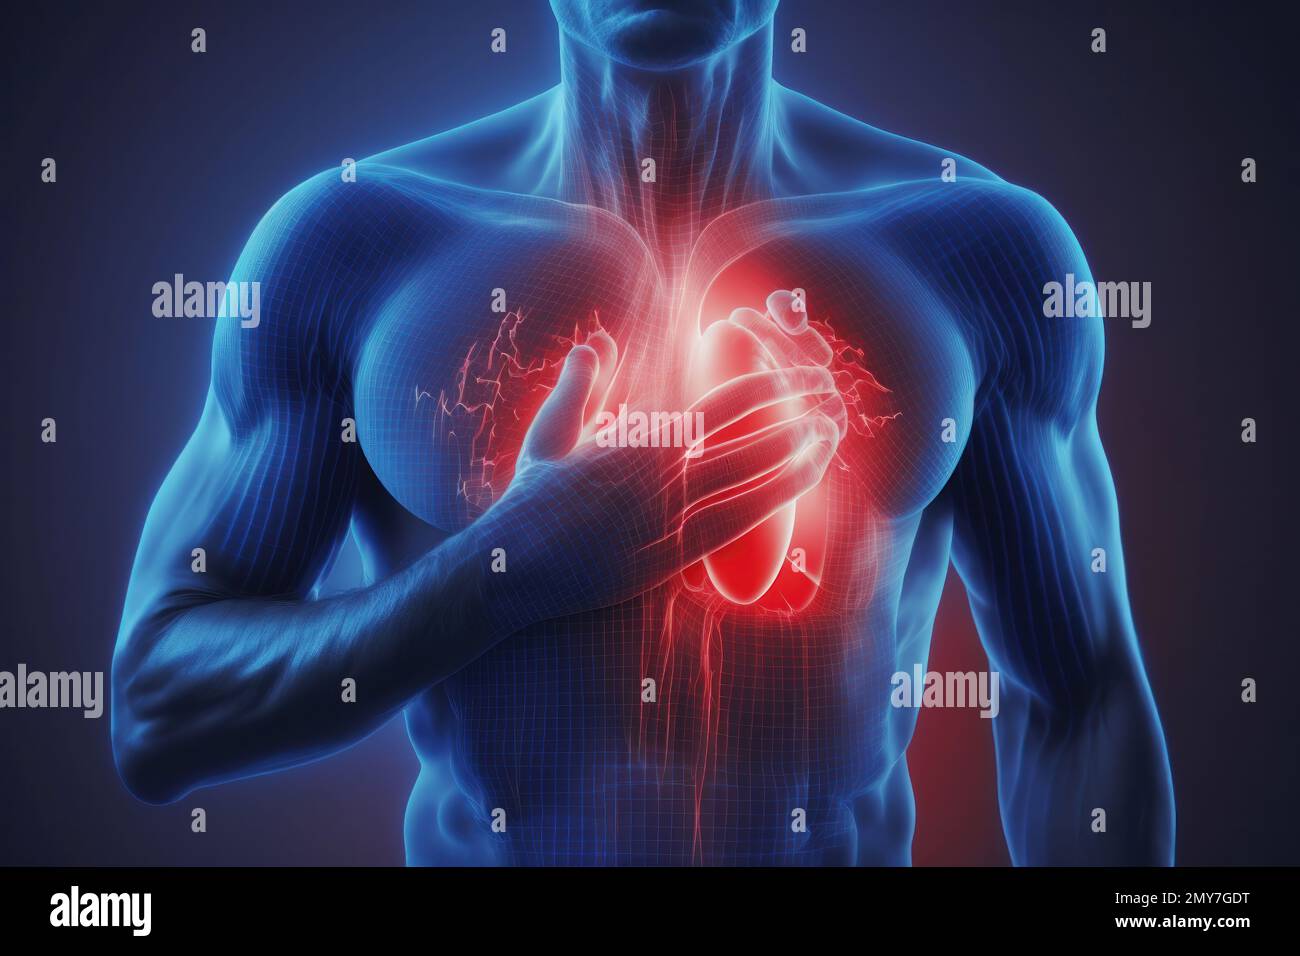 Una ilustración de ataque cardíaco es una representación visual de los síntomas, causas y efectos de un ataque cardíaco. Puede ser un dibujo, una pintura o un dígito Foto de stock